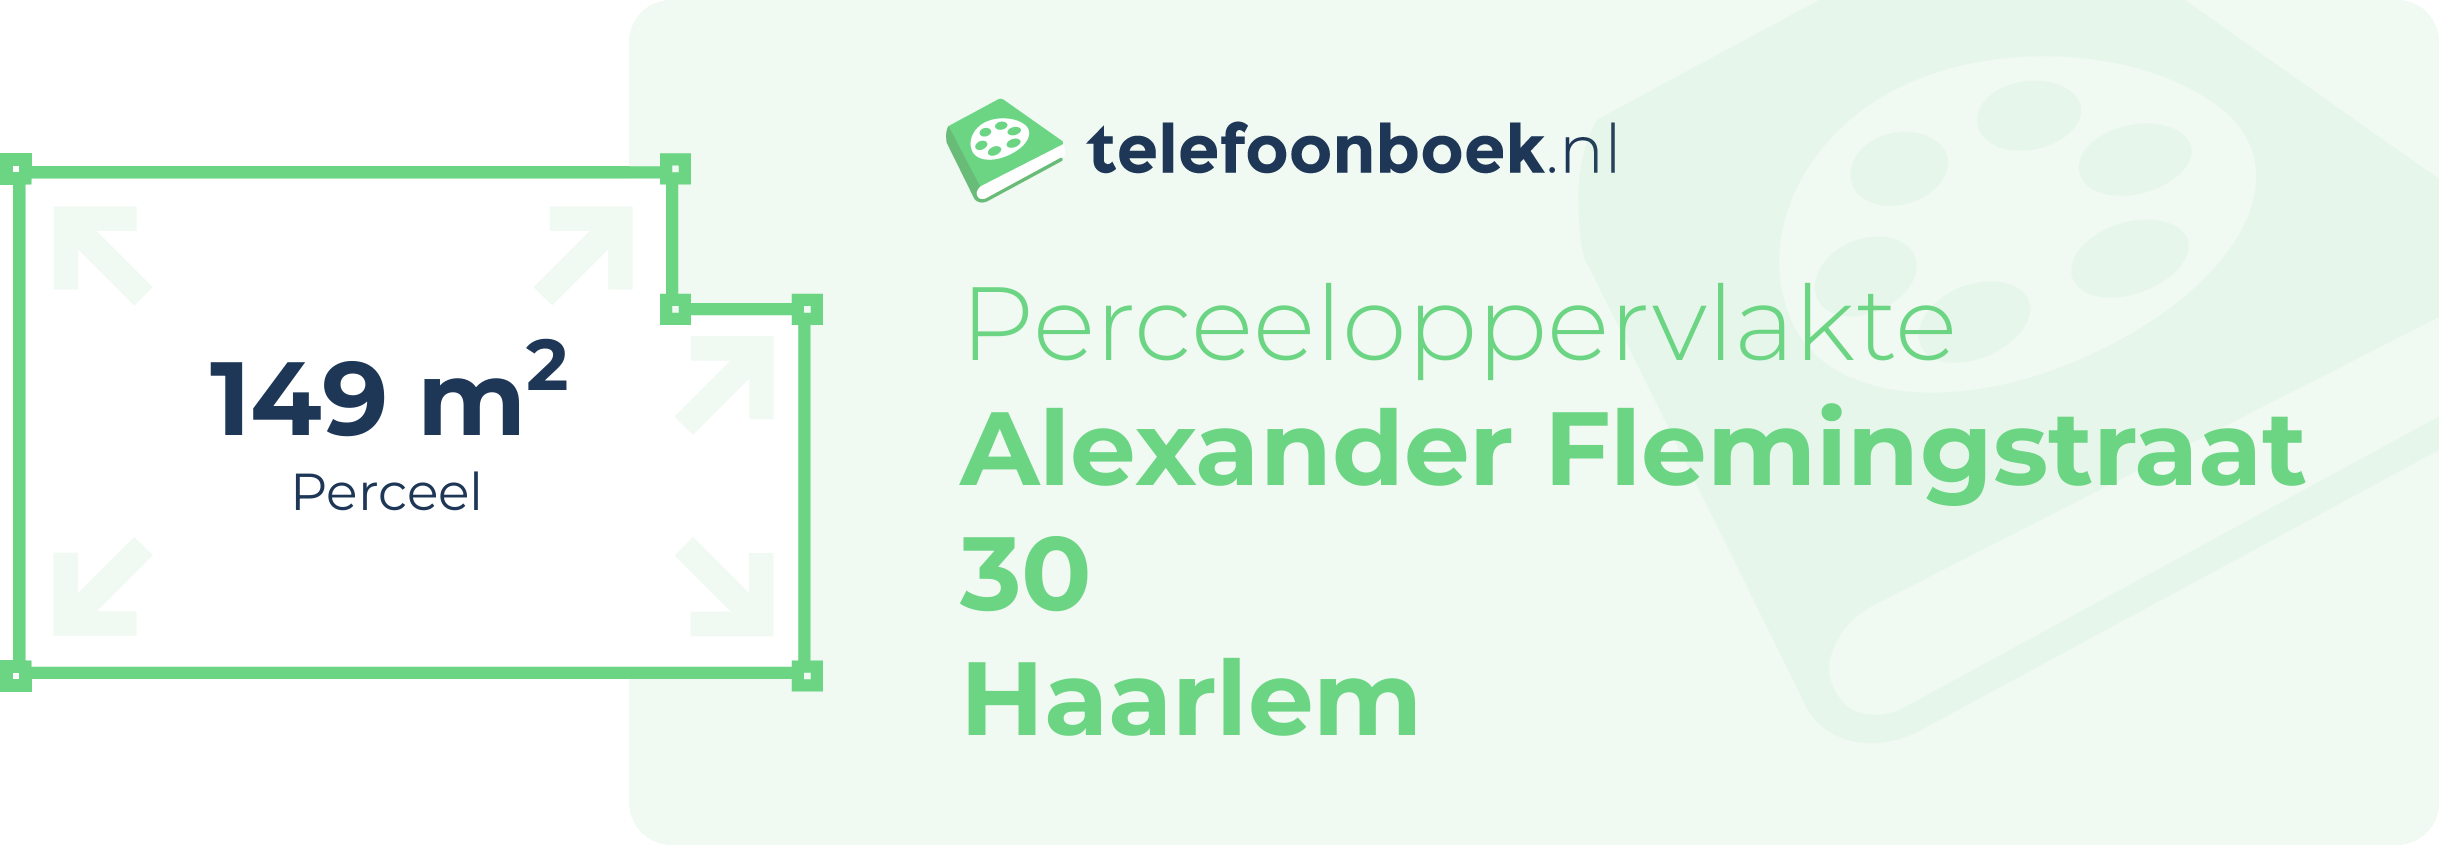 Perceeloppervlakte Alexander Flemingstraat 30 Haarlem